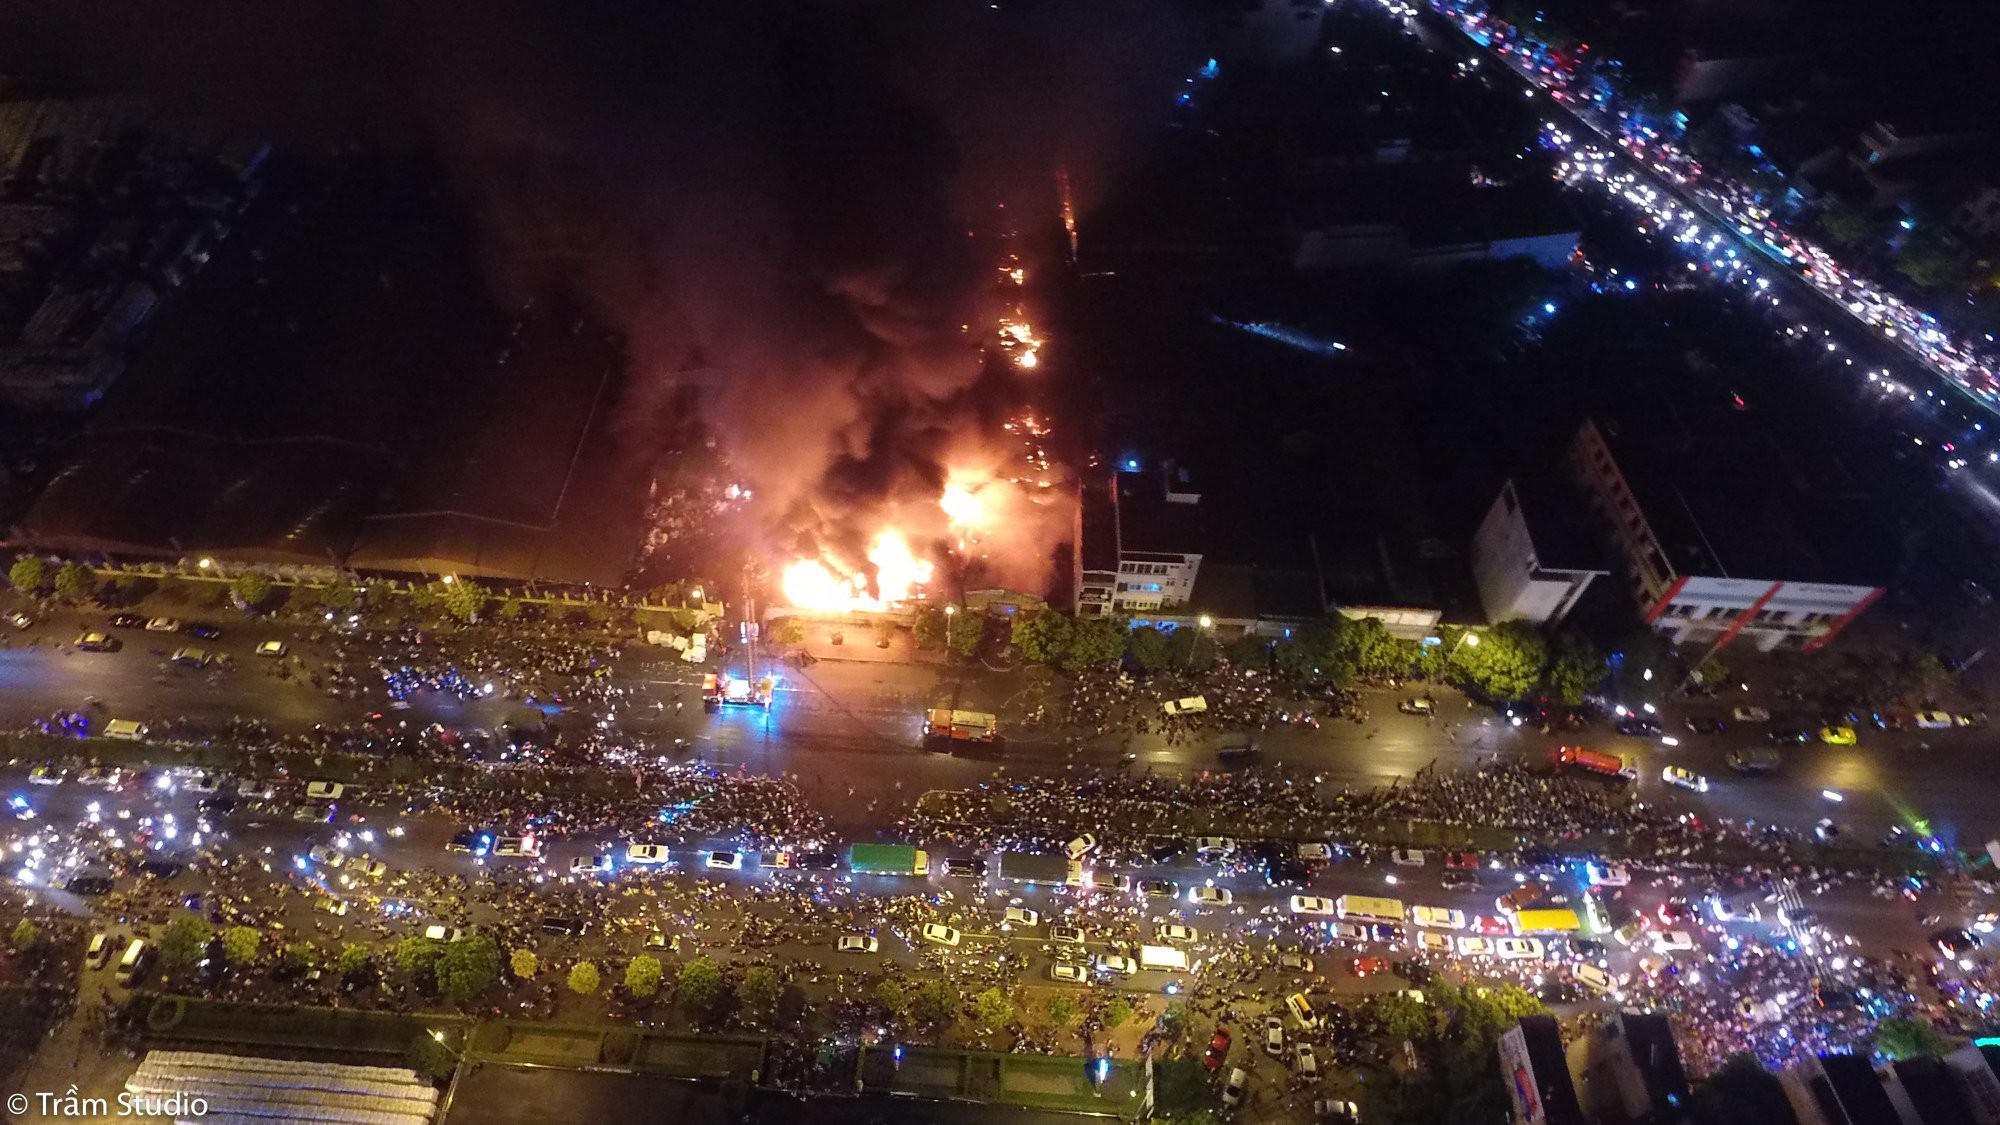 Toàn cảnh đám cháy ngùn ngụt chợ Gạo ở thành phố Hưng Yên nhìn từ trên cao - Ảnh 3.